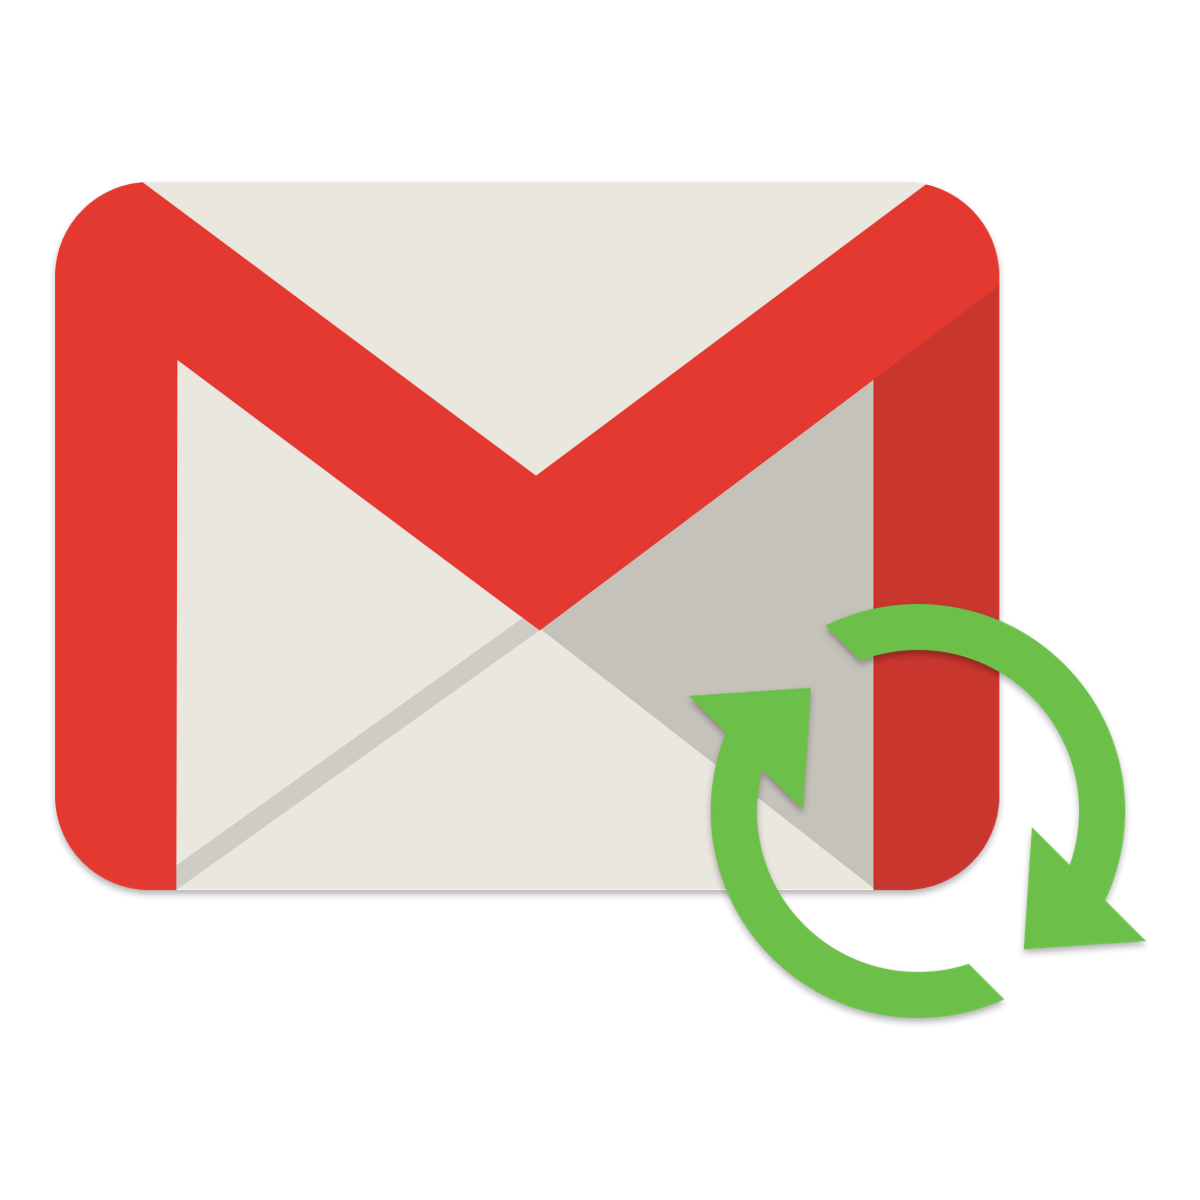 Gmail iphone. Mail Android. Gmail Android. Gmail логотип. Иконка gmail на iphone.